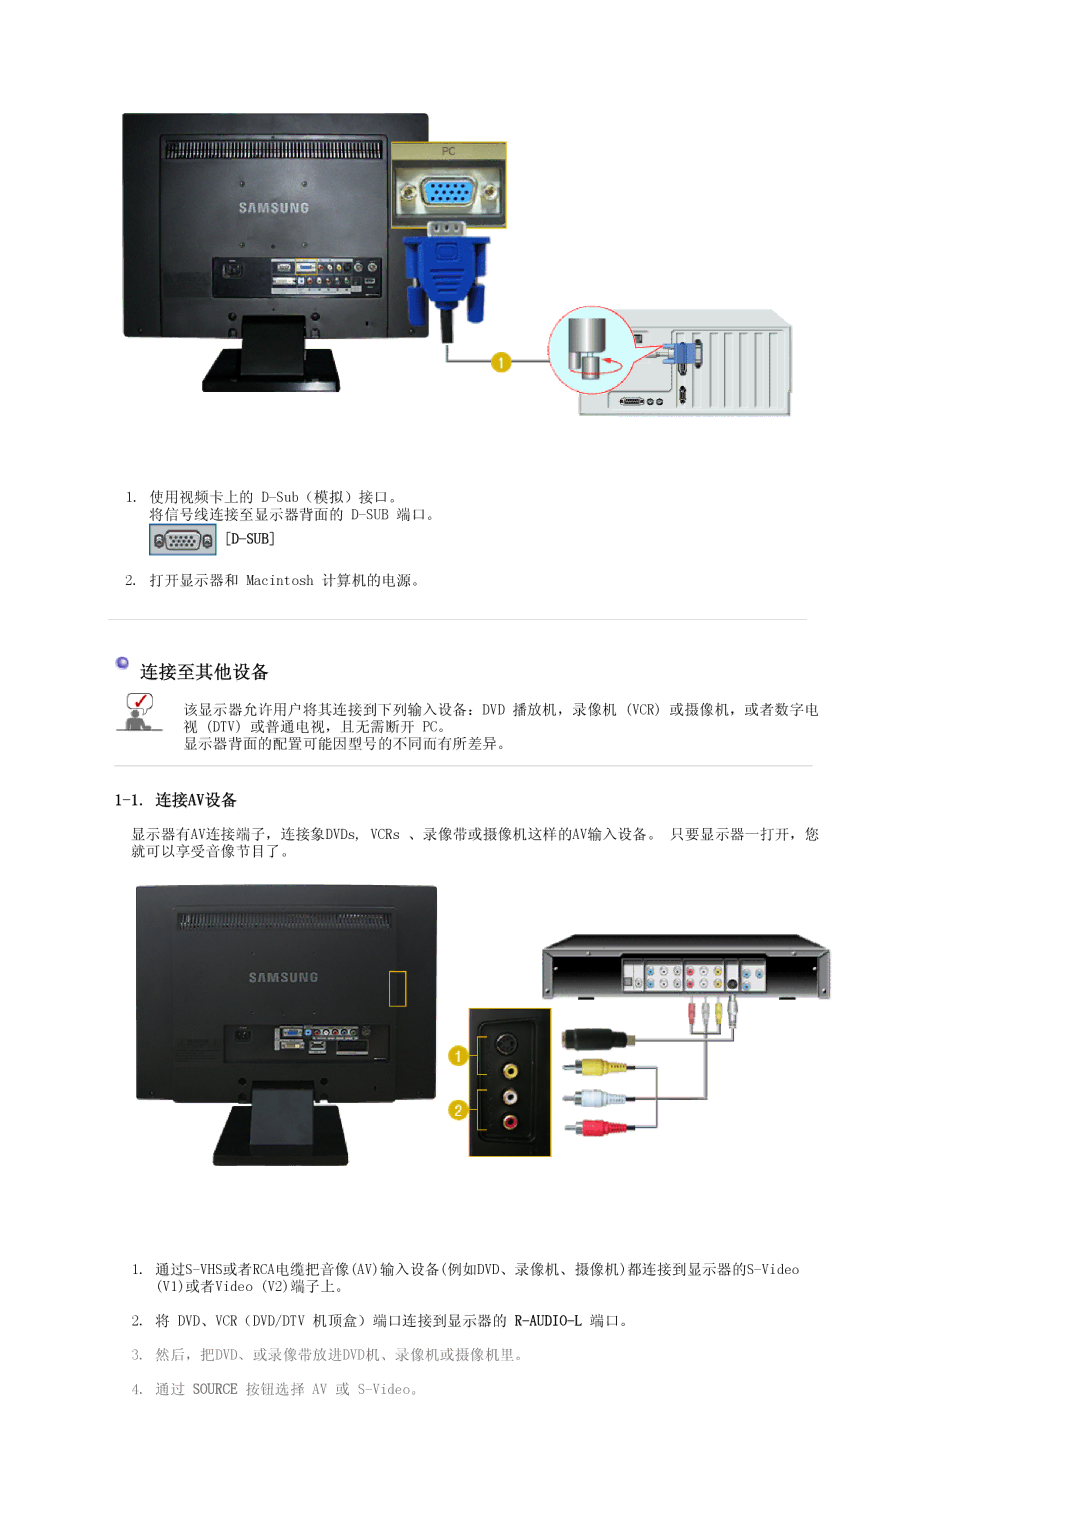 Samsung LS22CRASB6/EDC, LS22CRASB/EDC manual 连接av设备, Sub 